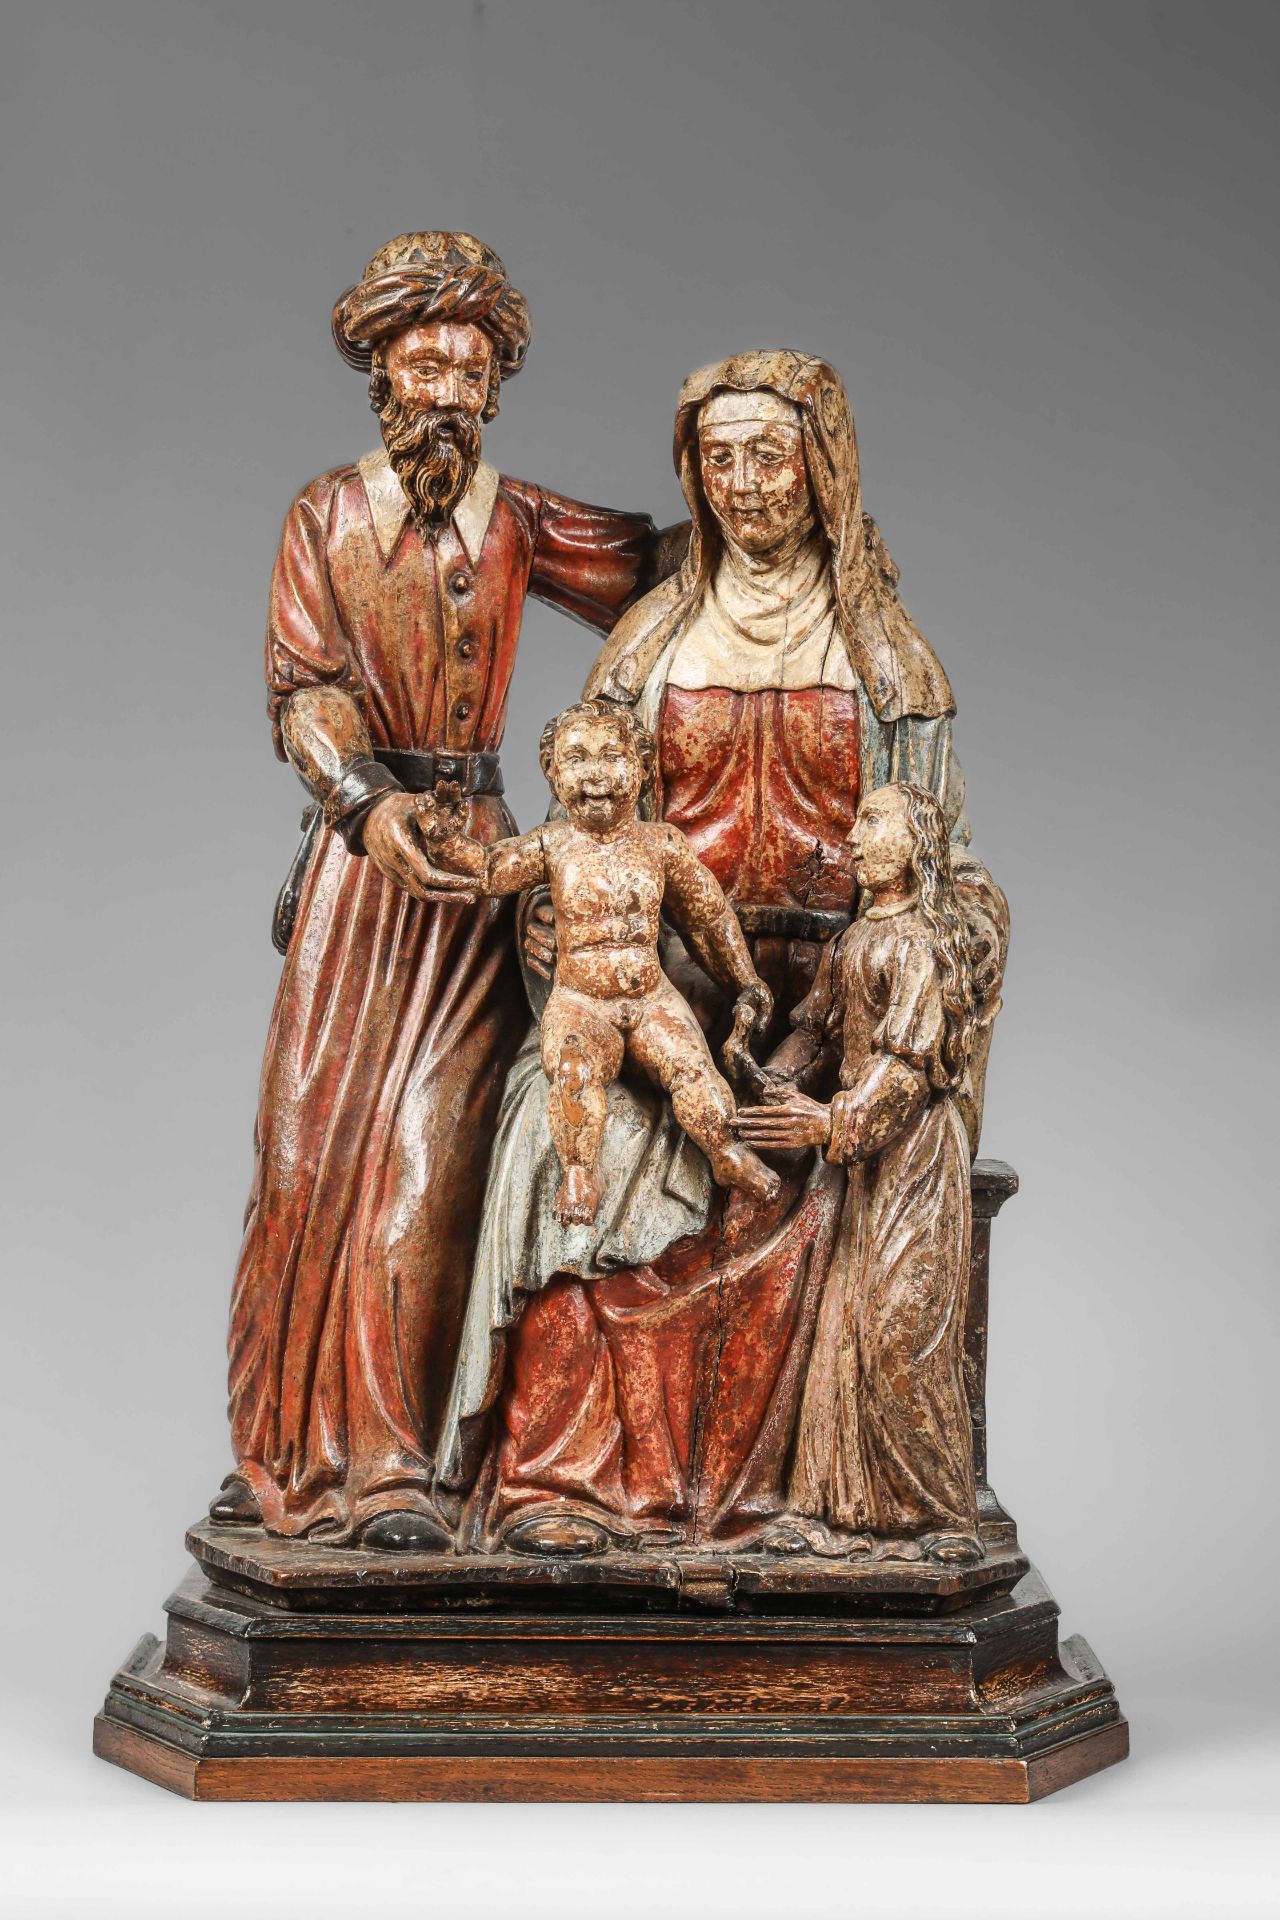 Sainte Famille : Joseph portant un turban et une longue robe debout à côté de Sainte Anne assise